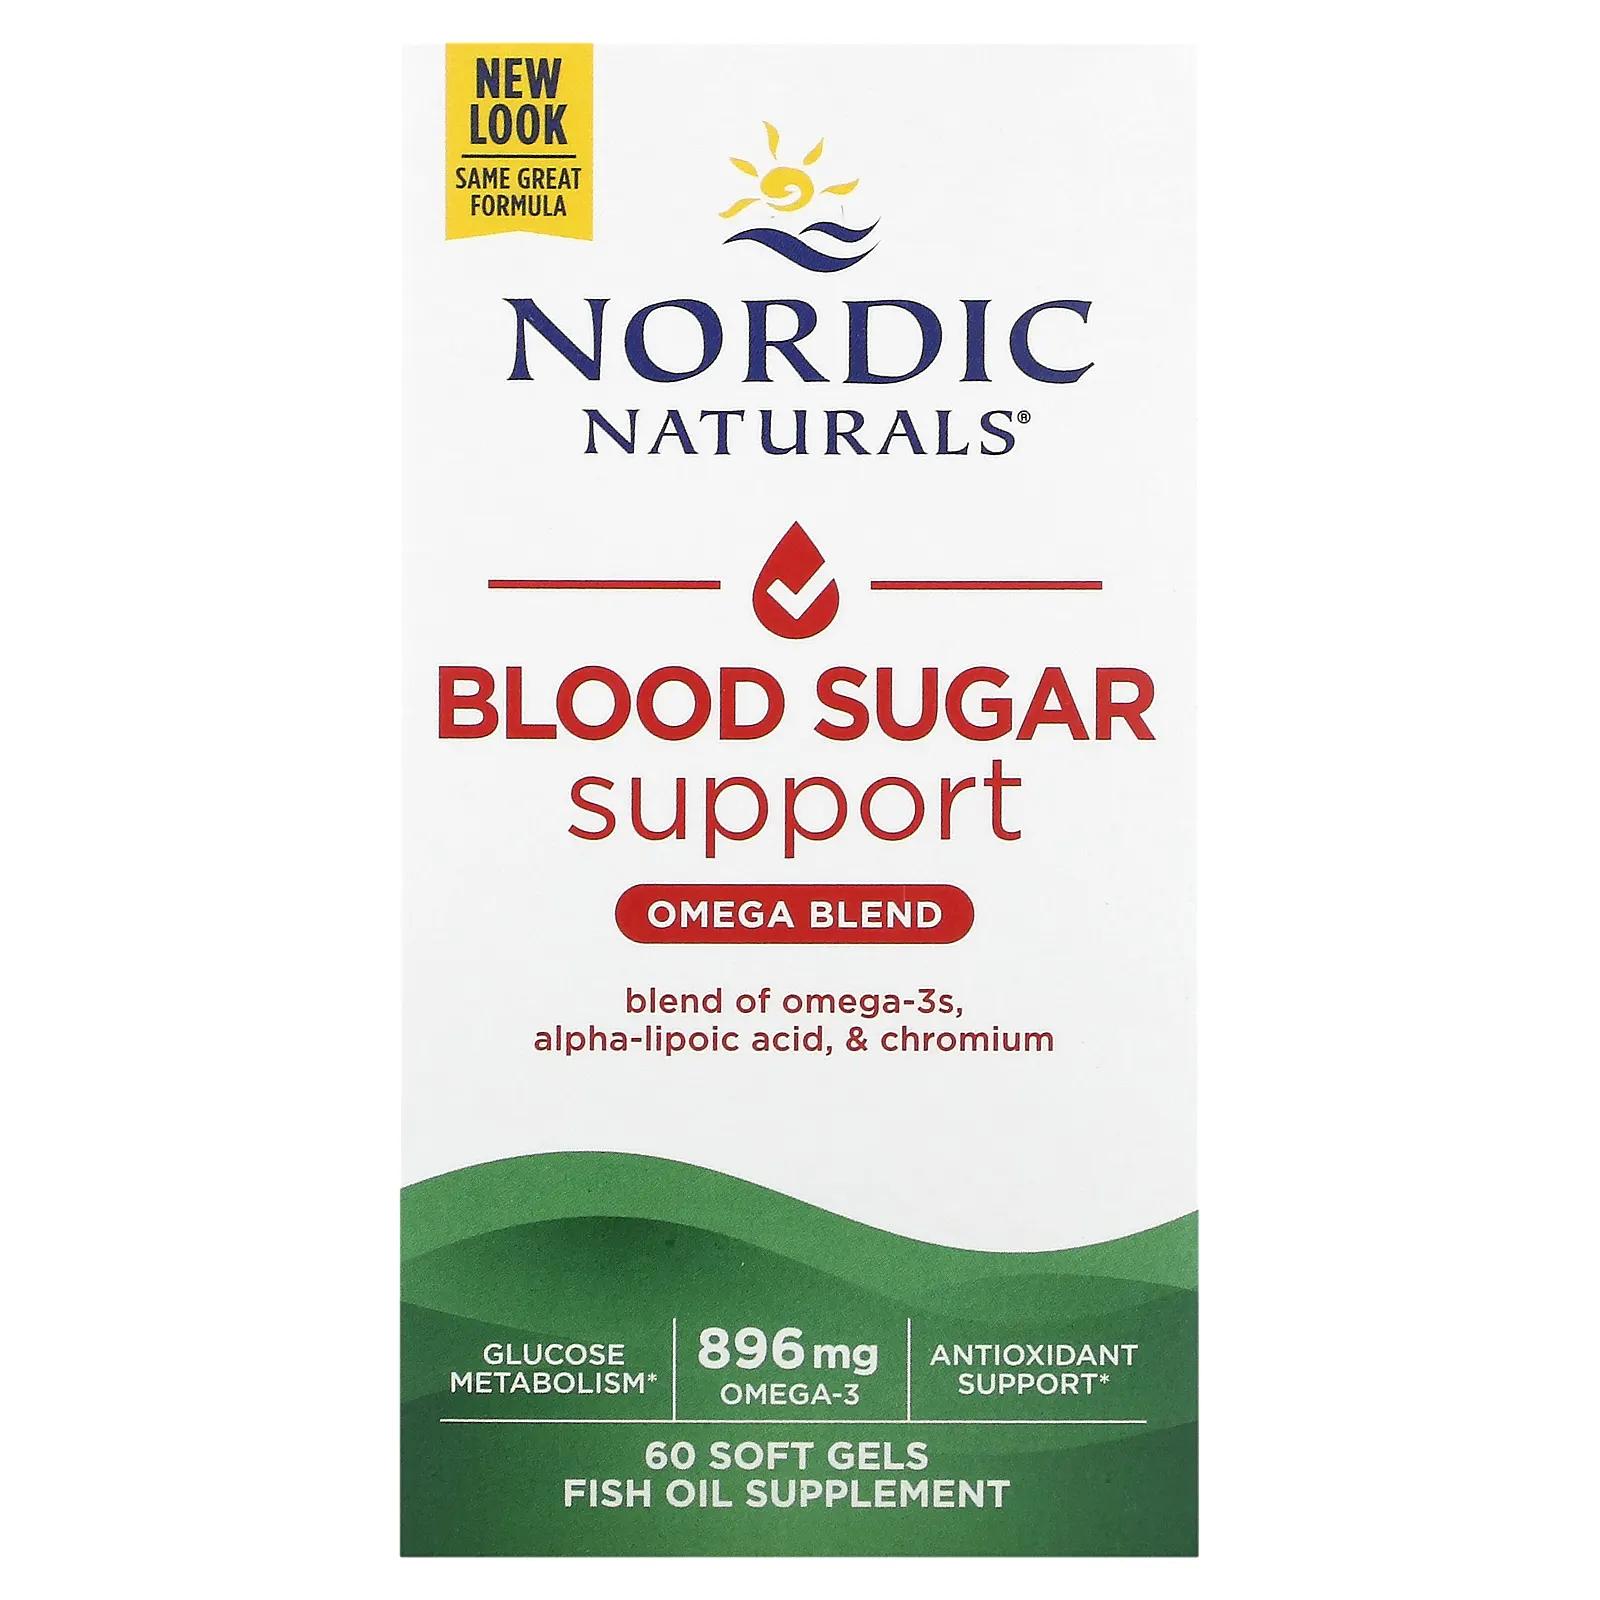 Nordic Naturals Omega Blood Sugar 1000 мг 60 мягких таблеток nordic naturals omega blood sugar 896 mg добавки с омега 3 жирными кислотами 60 шт